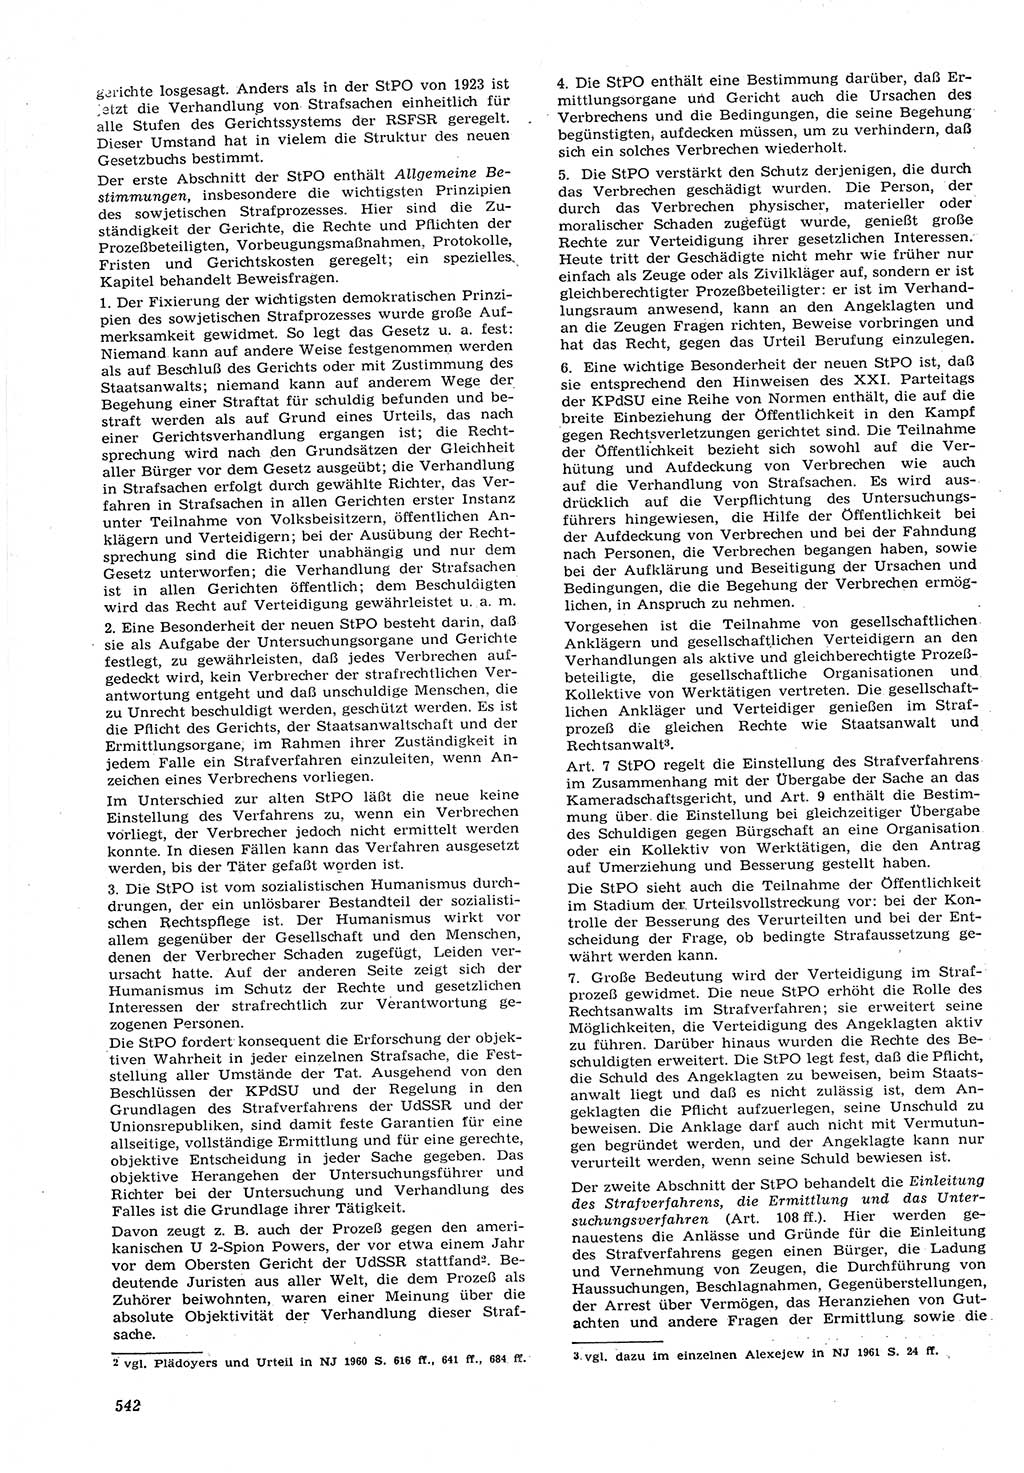 Neue Justiz (NJ), Zeitschrift für Recht und Rechtswissenschaft [Deutsche Demokratische Republik (DDR)], 15. Jahrgang 1961, Seite 542 (NJ DDR 1961, S. 542)